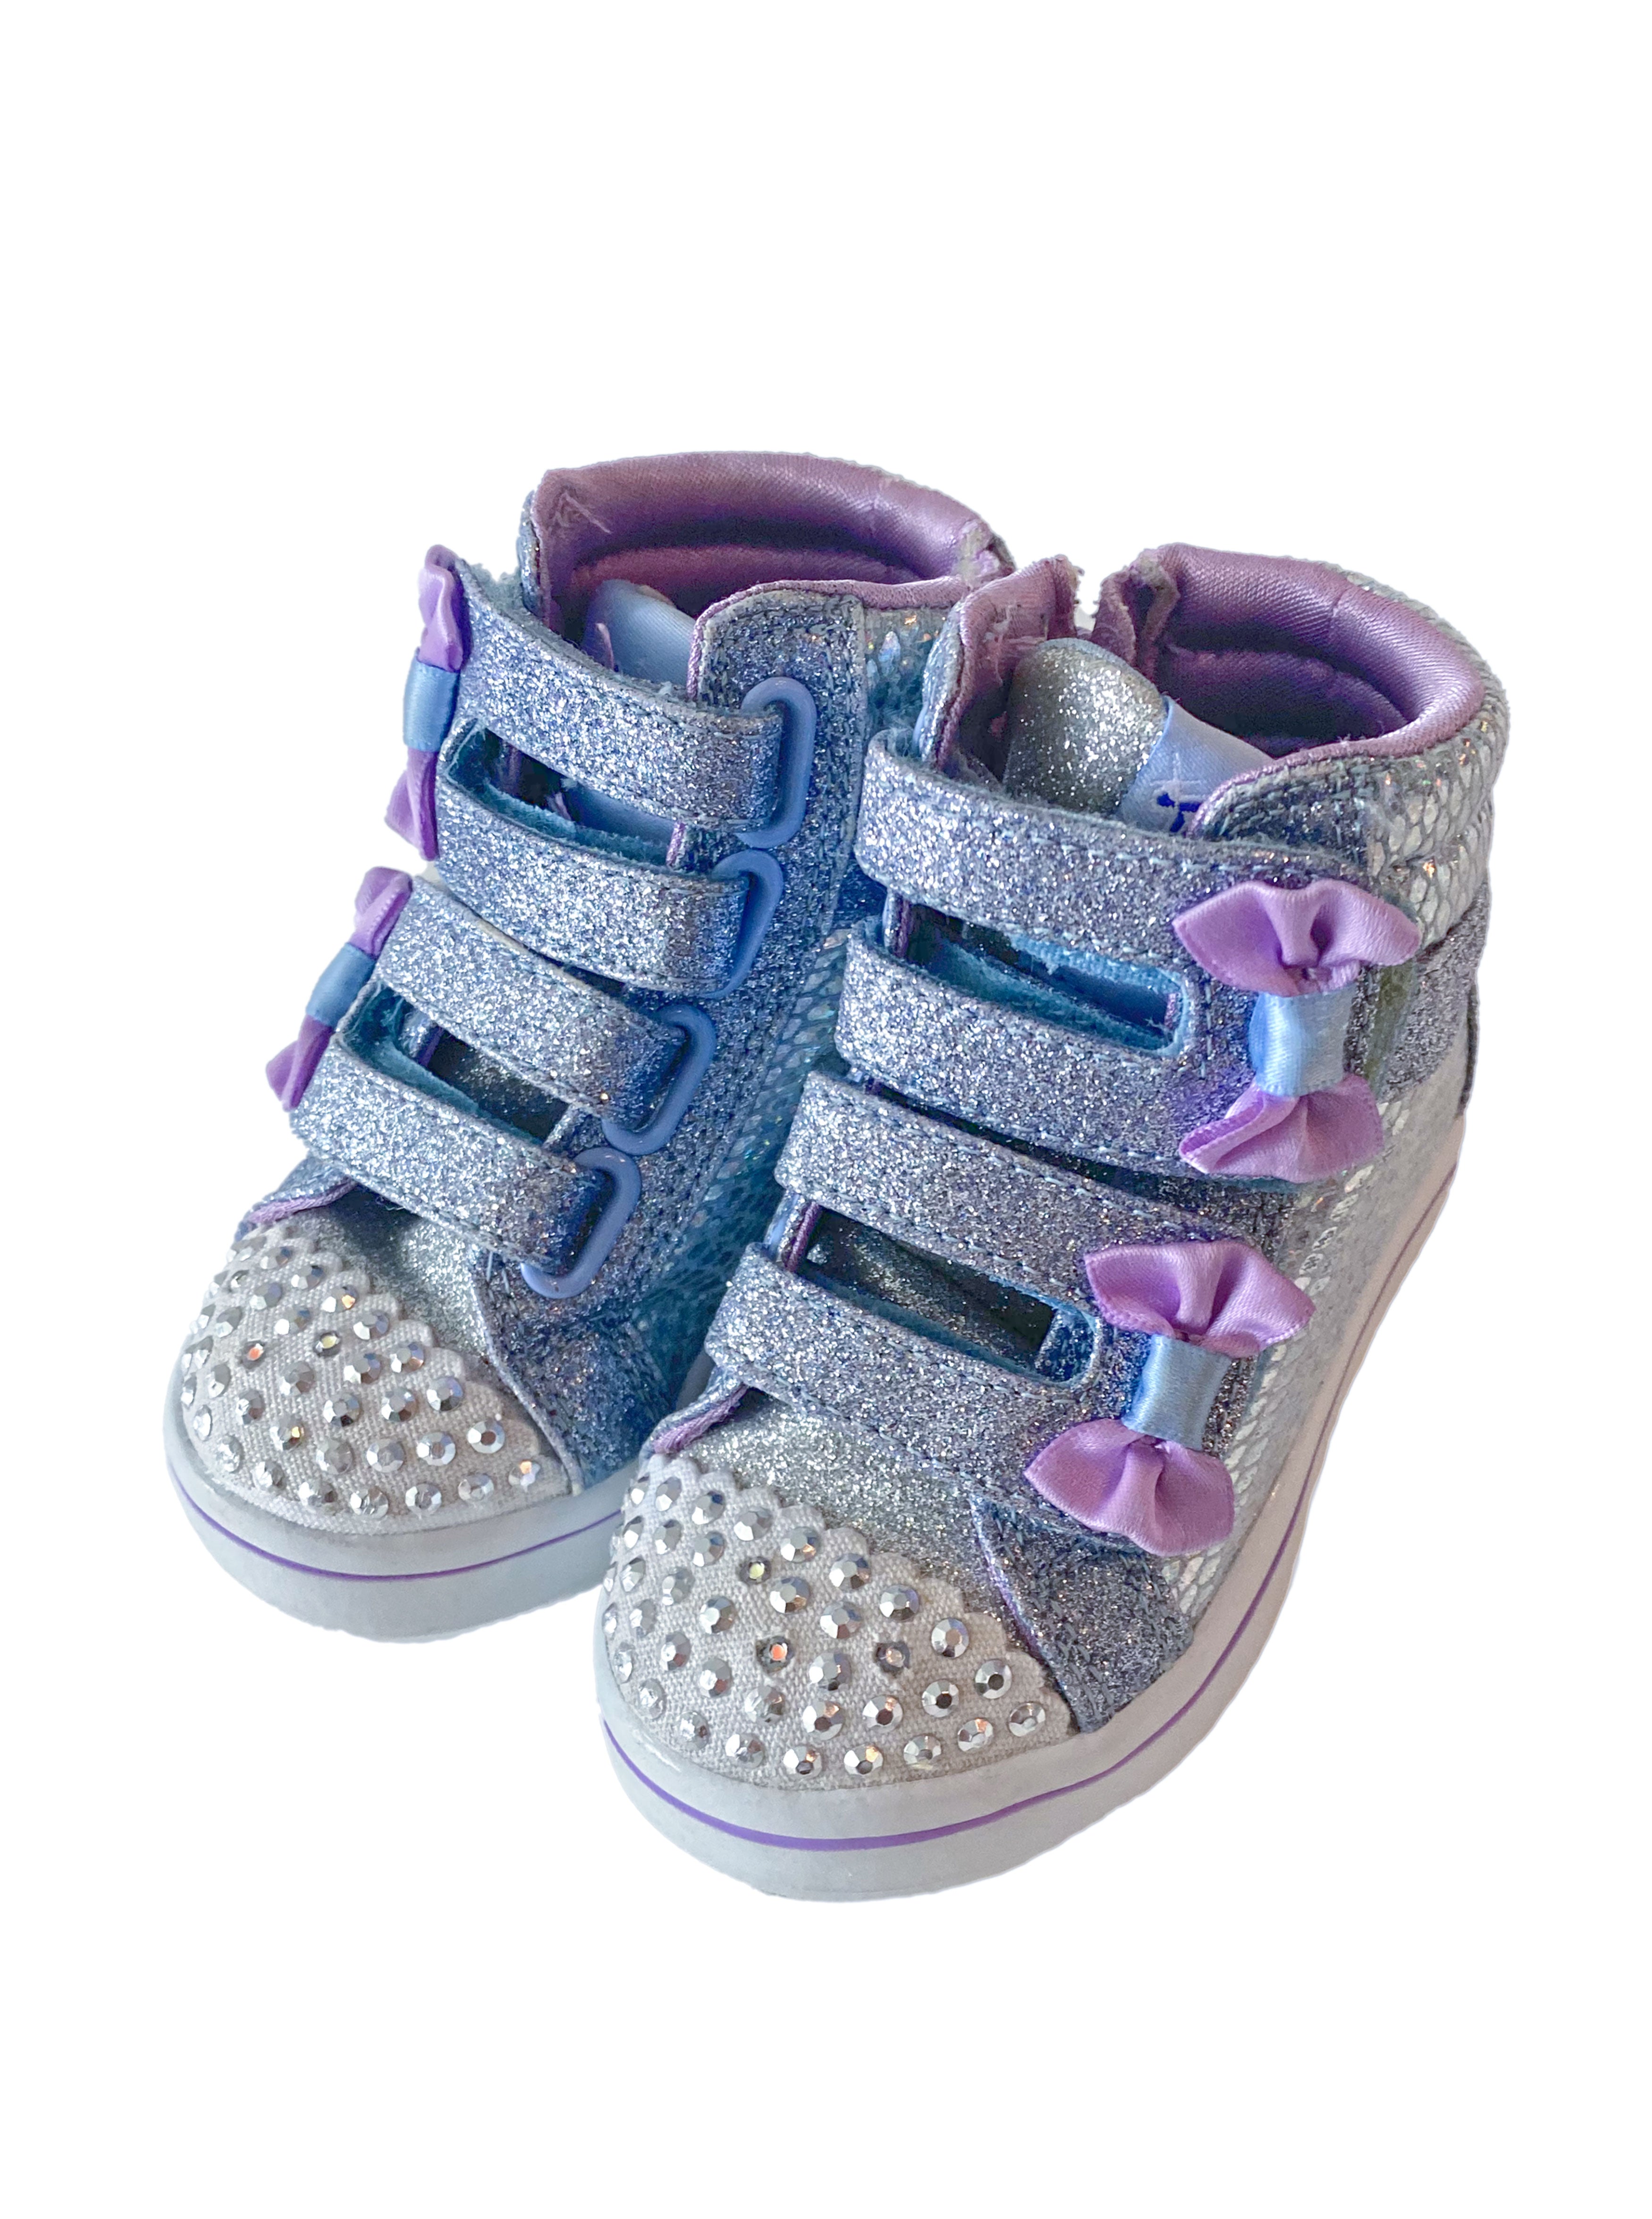 S Sport By Skechers Girls' Kortney Star Print Sneakers - Lavender/teal  Green : Target